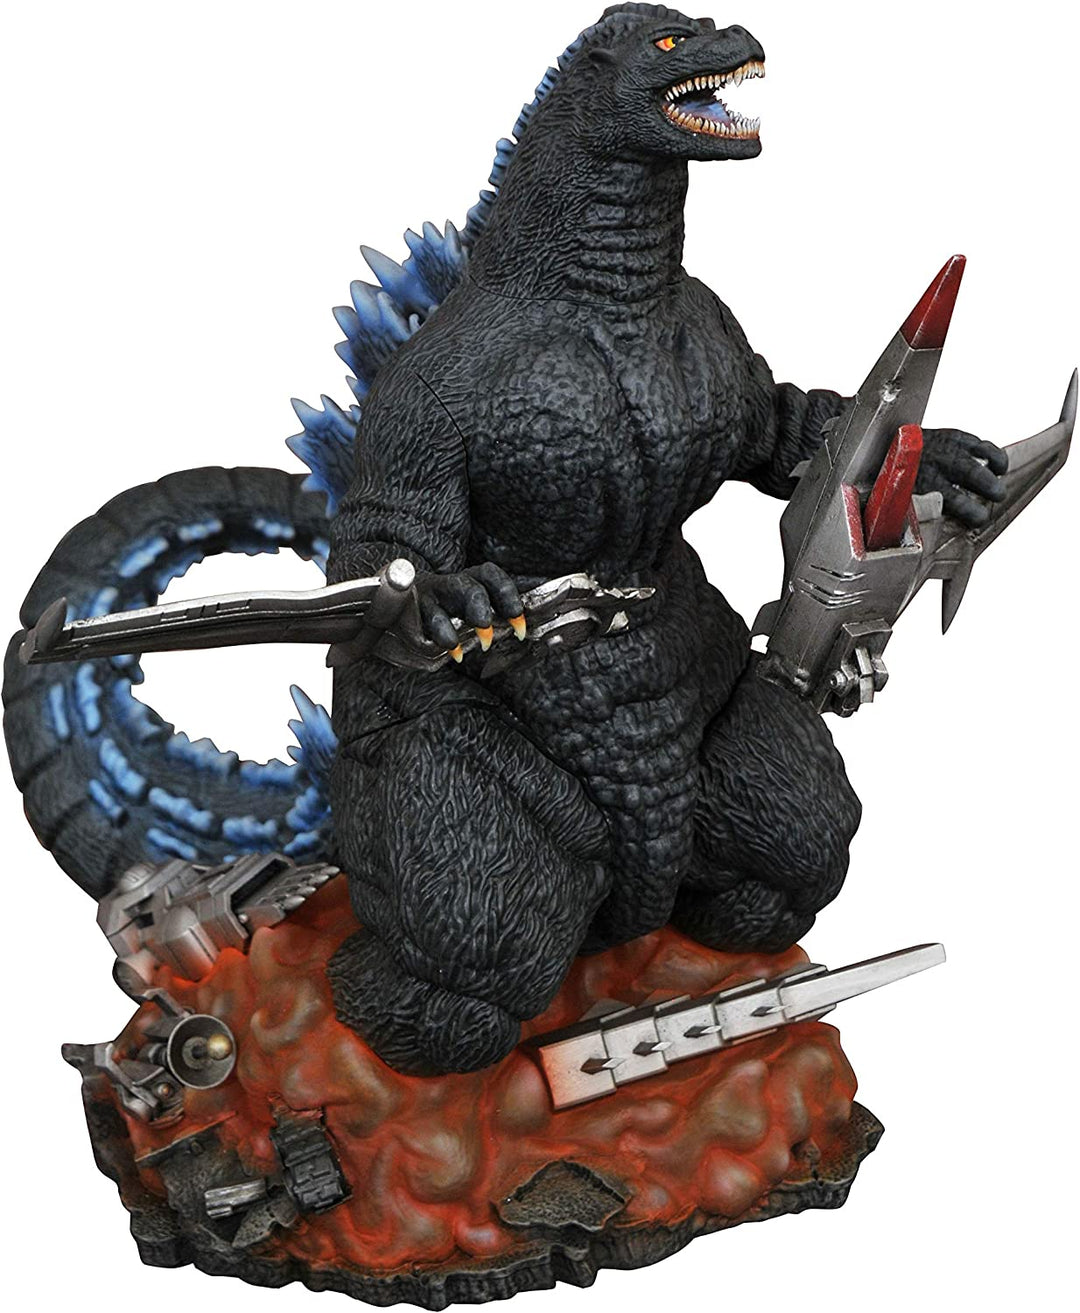 Diamond Select Toys Godzilla Gallery: 1993 Godzilla PVC Figure